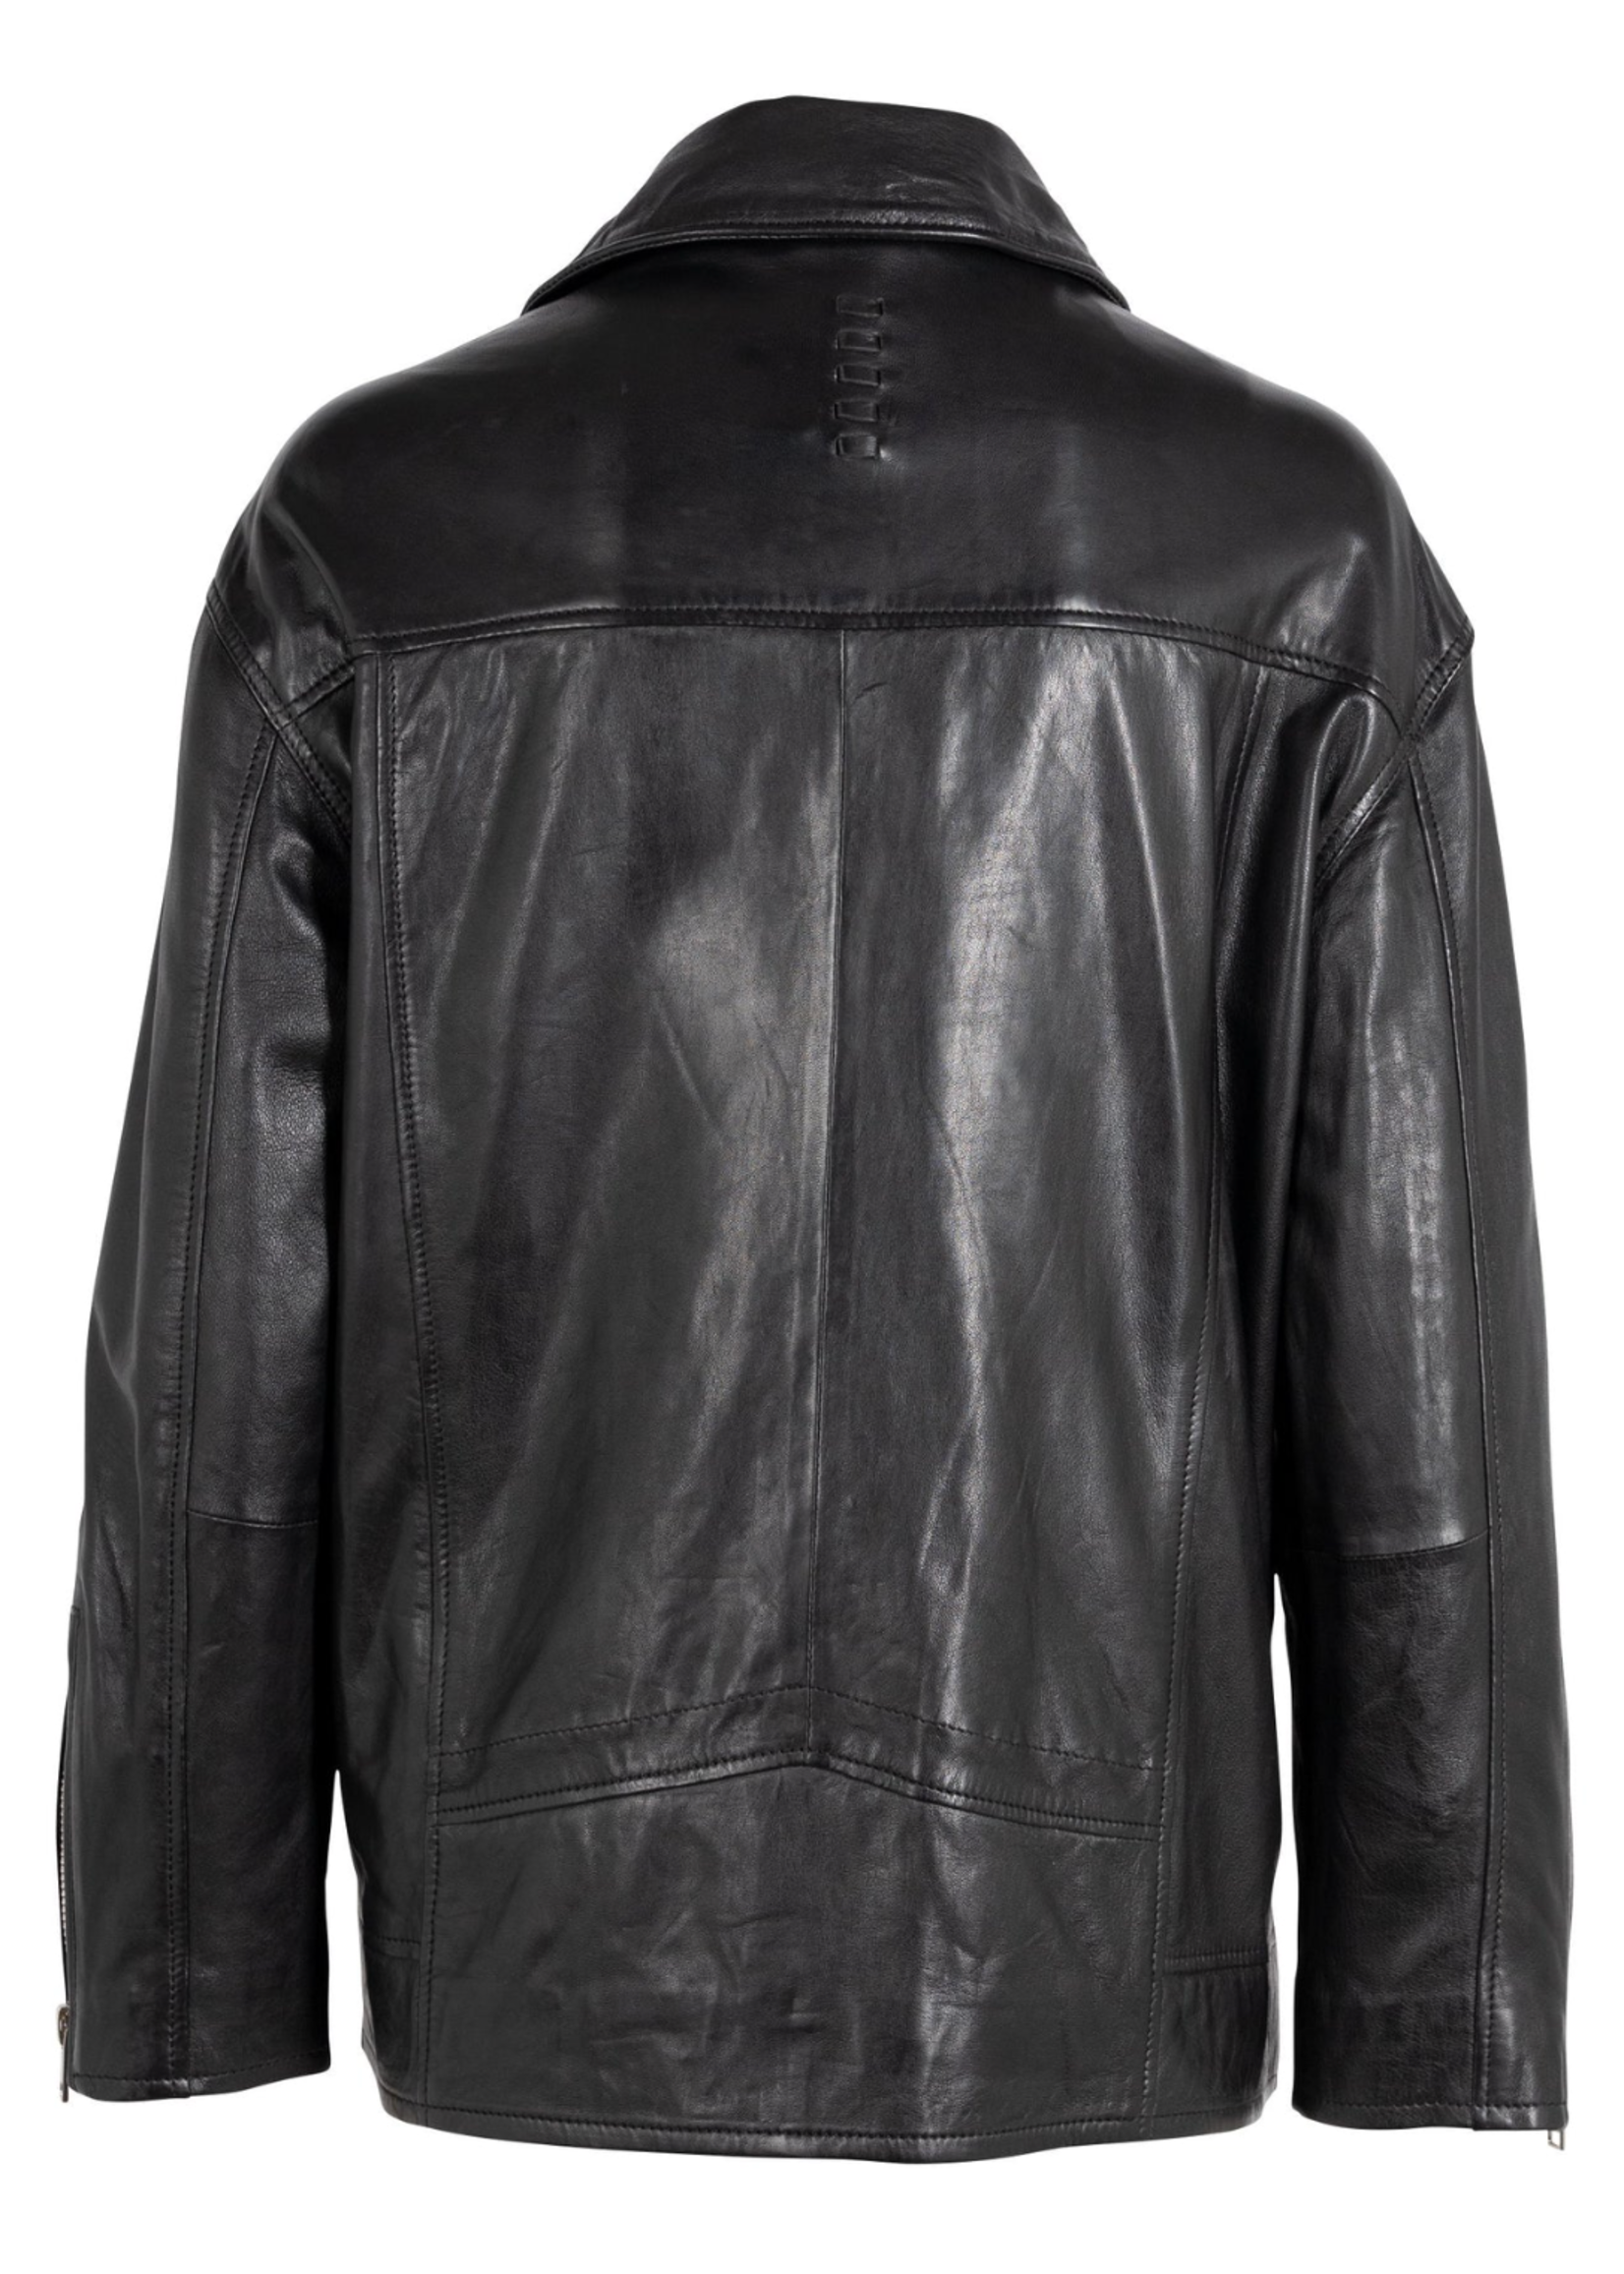 Mauritius Yori Leather Jacket